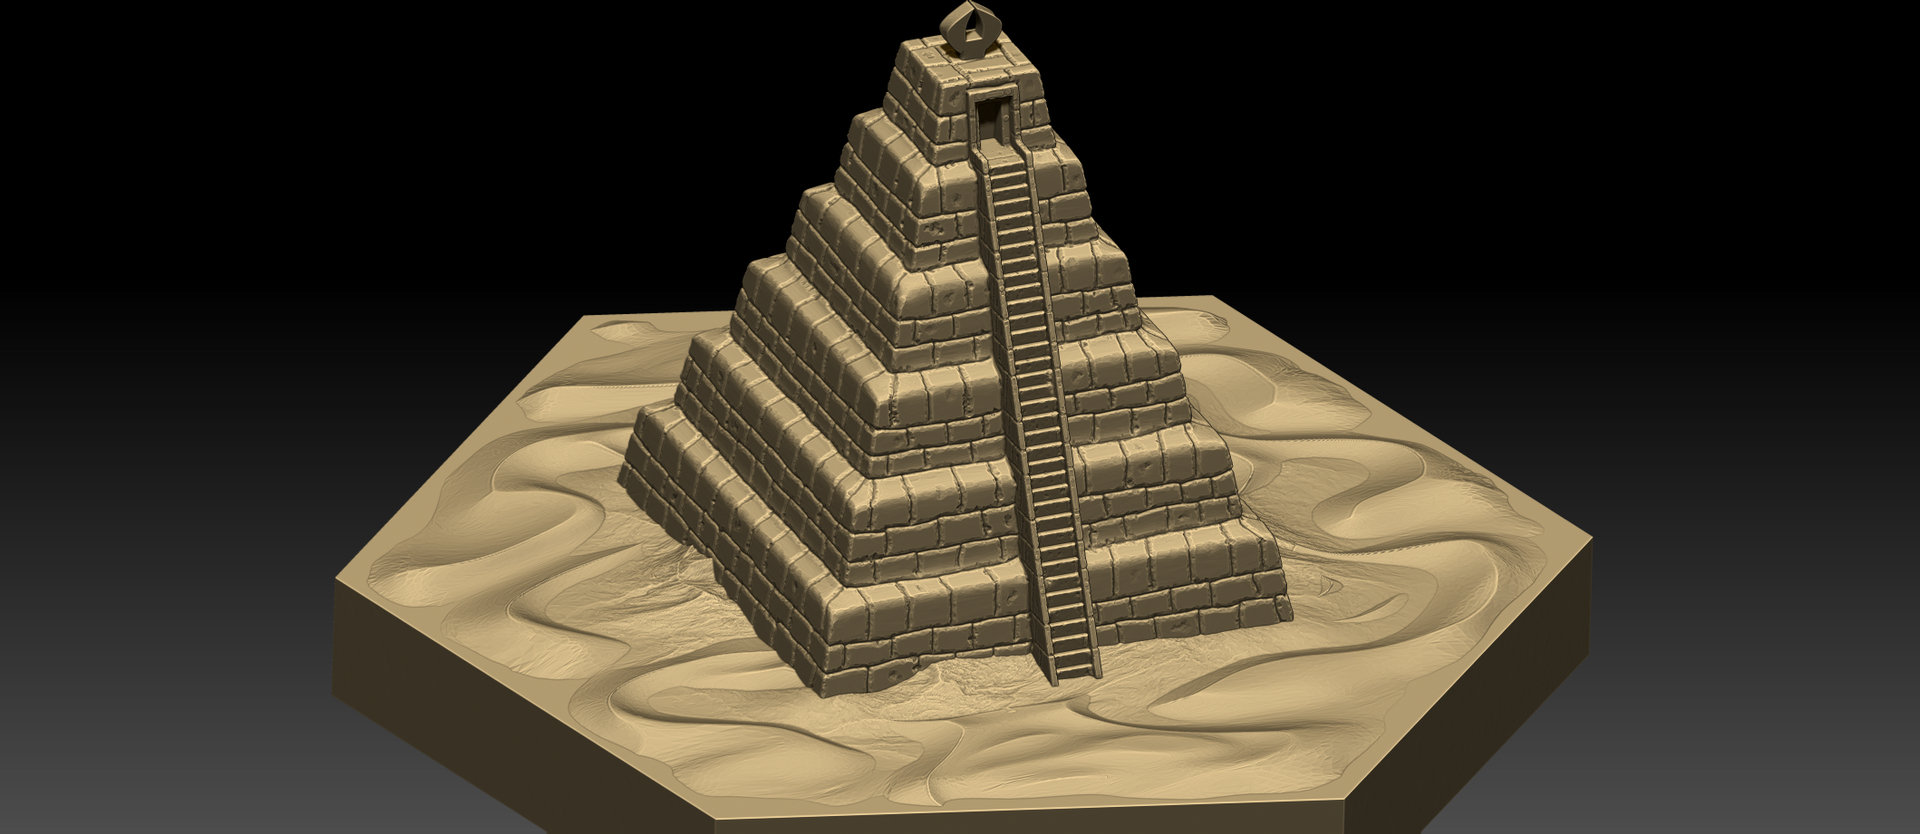 Вулкан пирамиды играть. Hexagon карта 3д. 2d Hexagon Terrain. Hexagon Map urbica 3d.